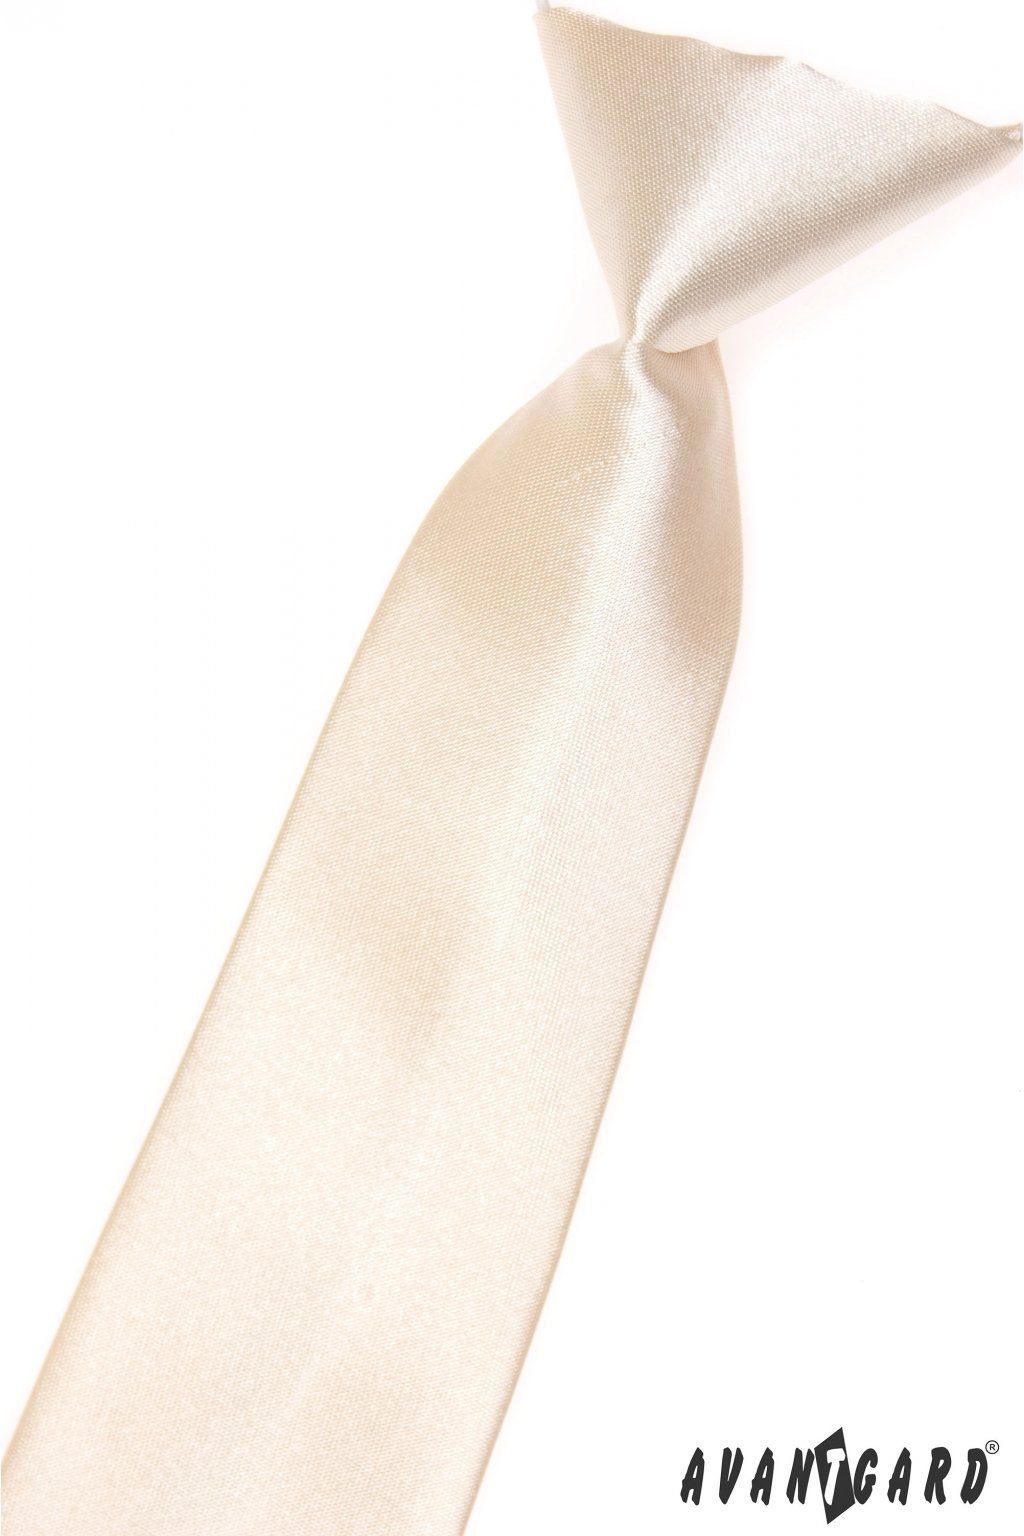 Chlapecká kravata smetanová 558 - 722